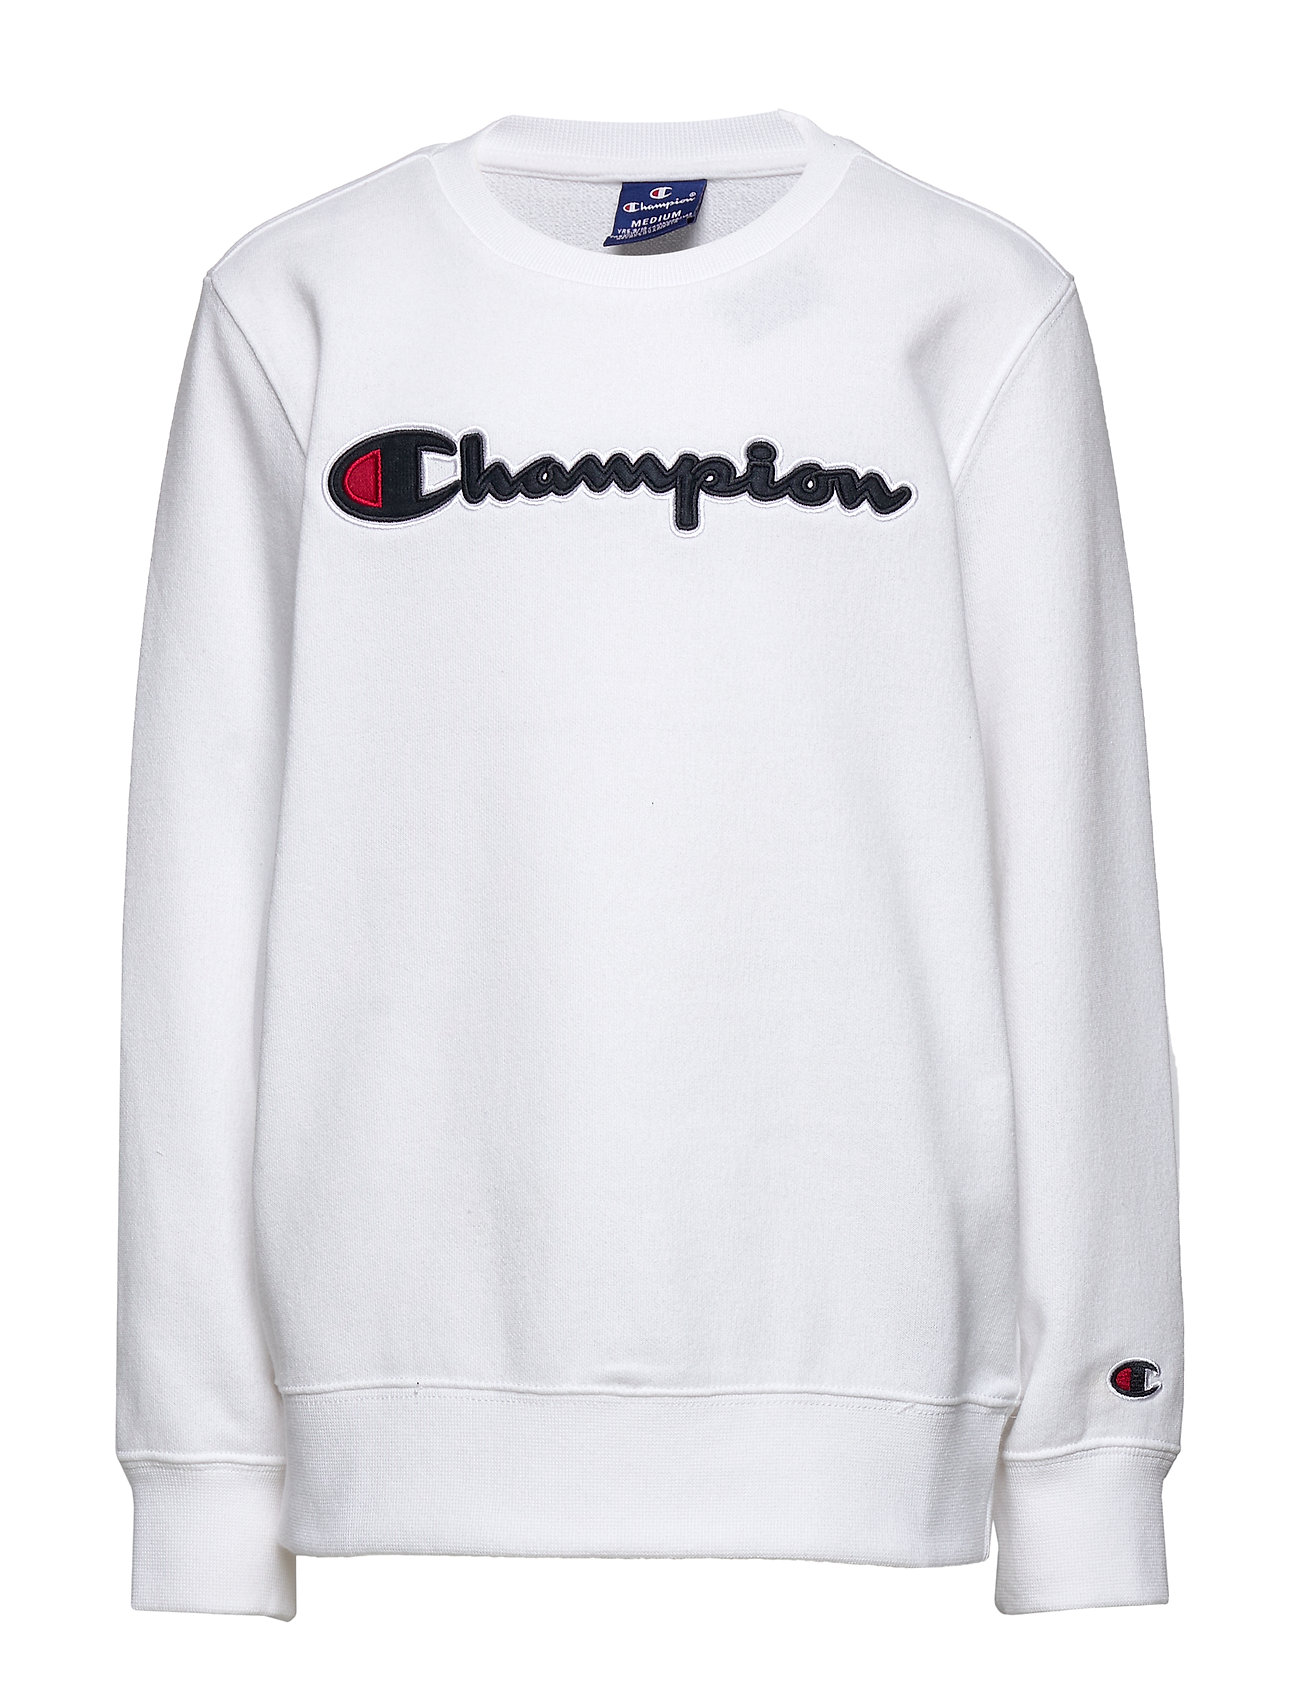 champion white sweatshirt